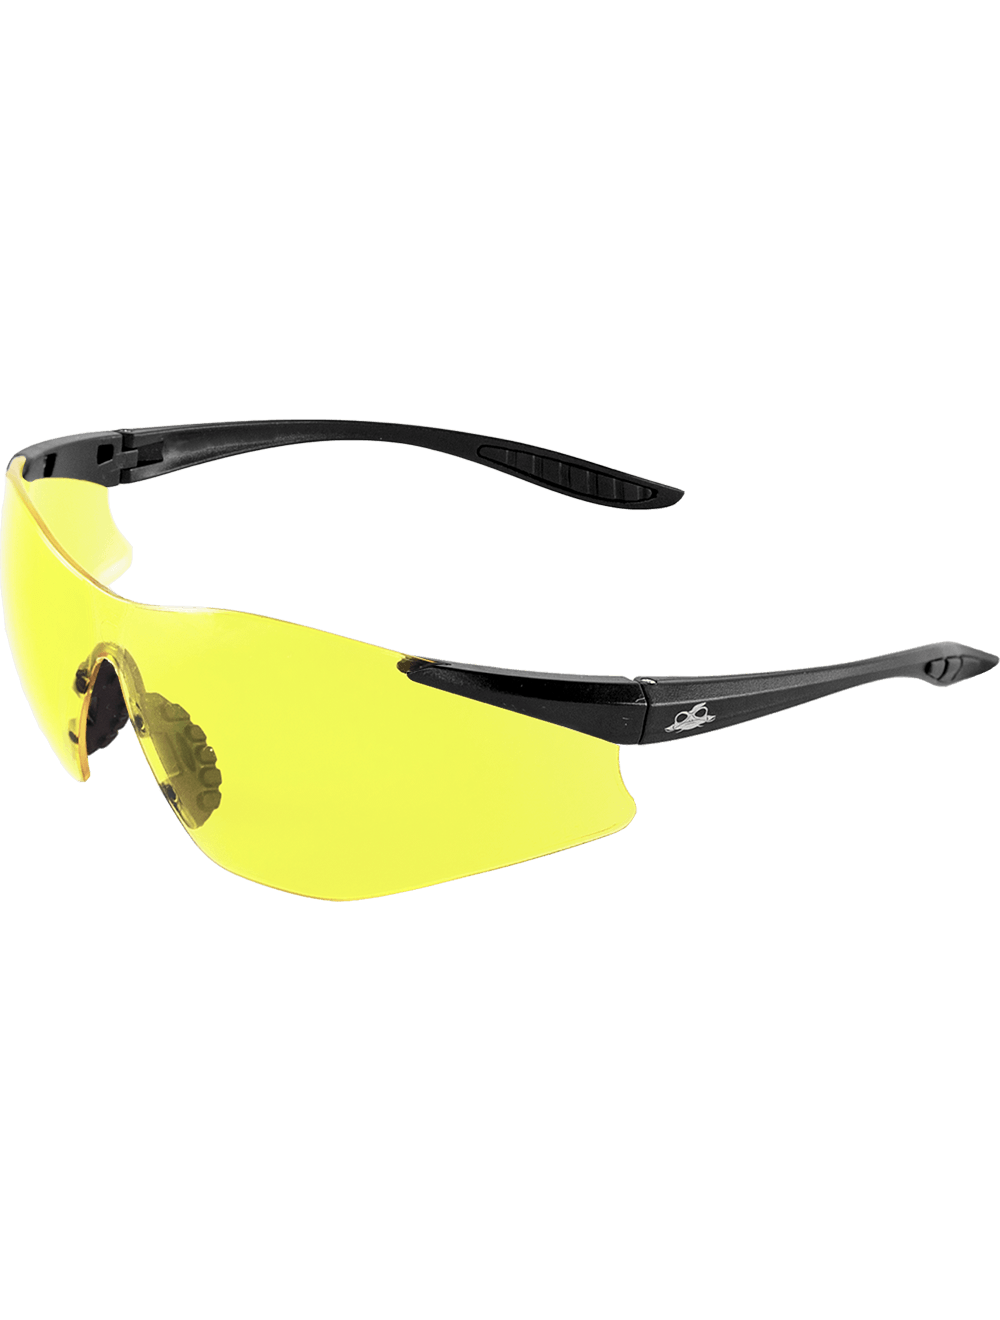 Snipefish® Yellow Anti-Fog Lens, Matte Black Frame Safety Glasses - LIMITED STOCK - BH764AF